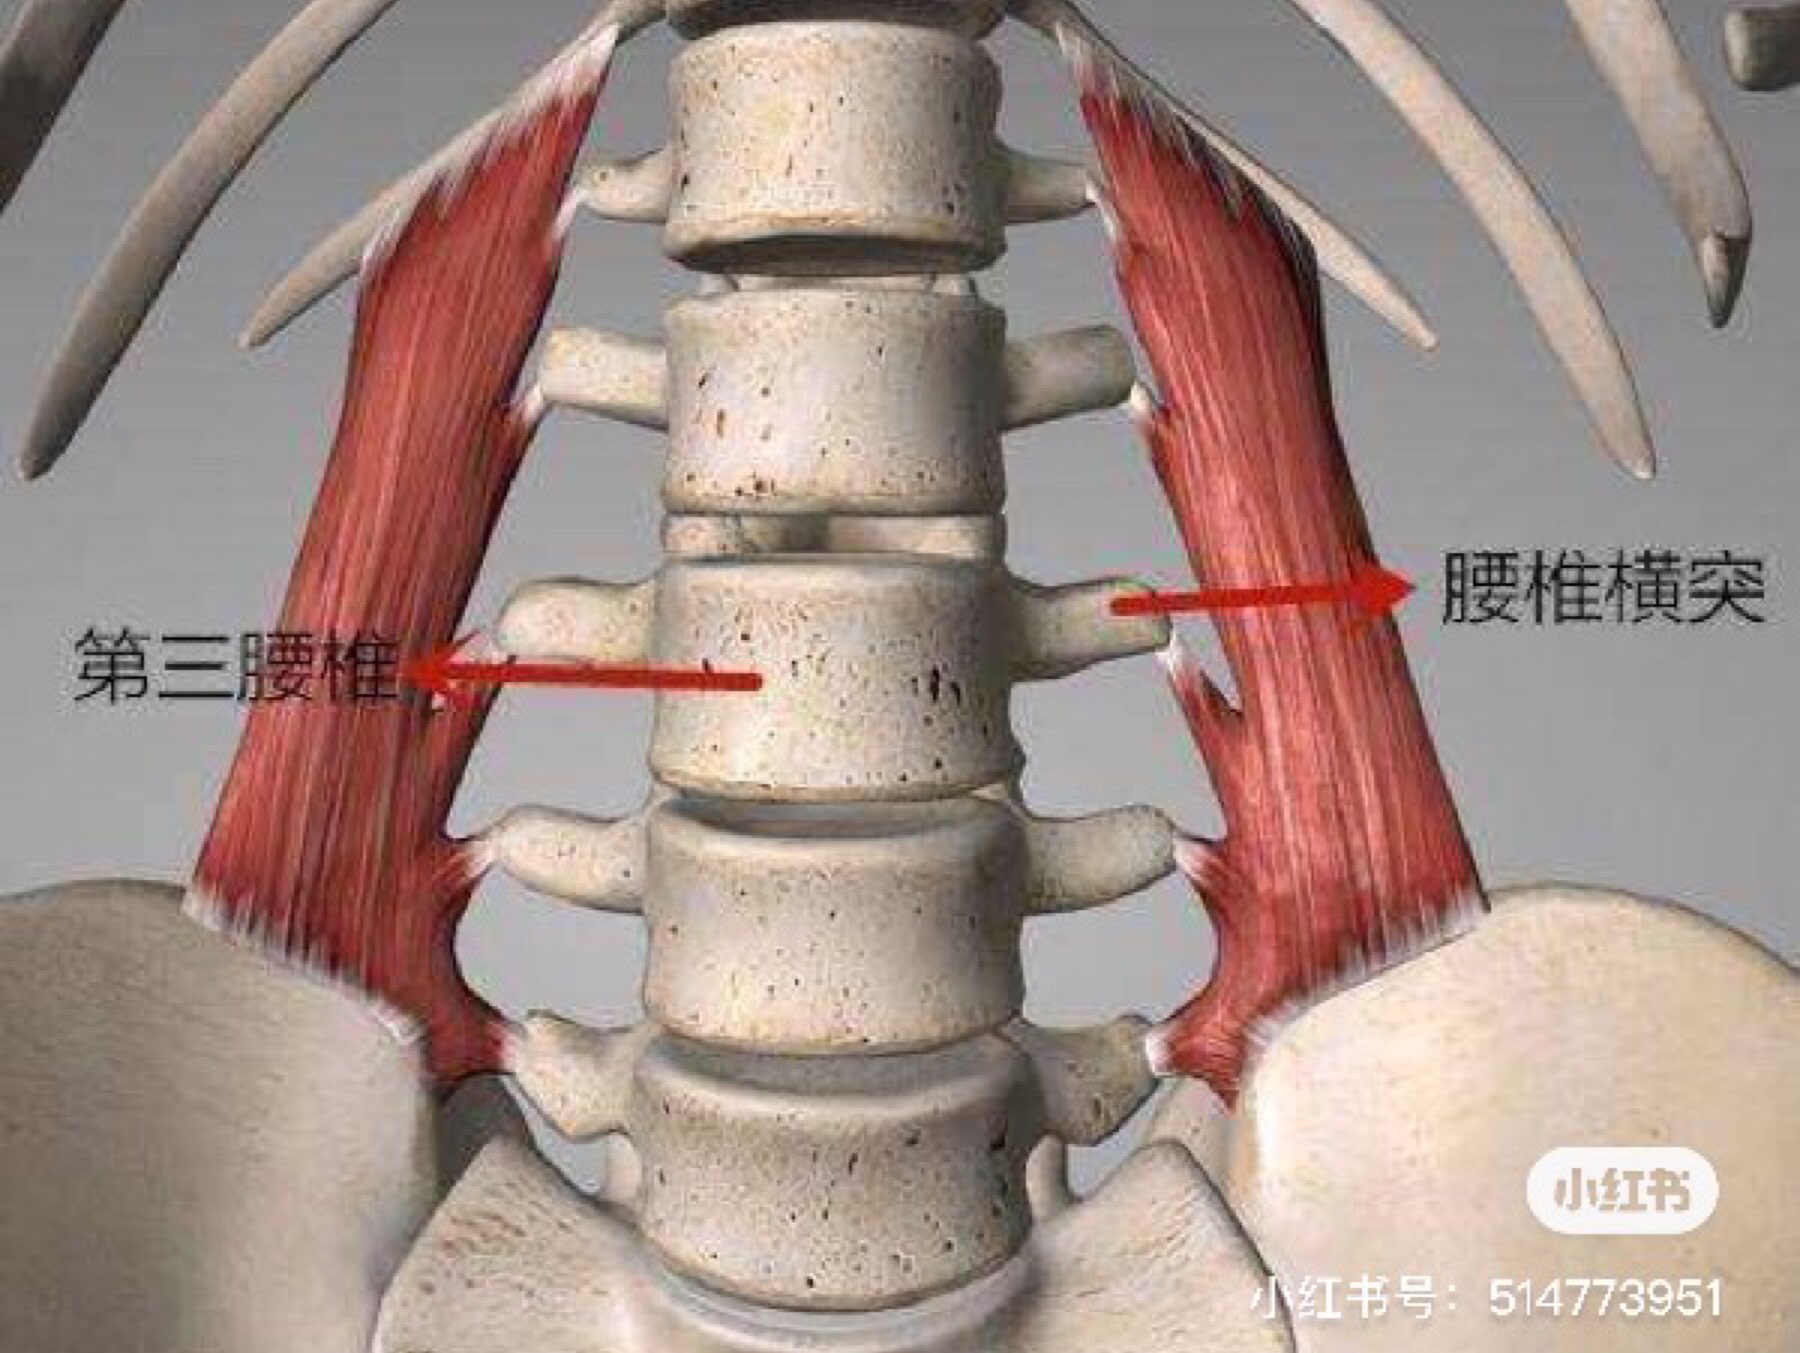 第三腰椎横突综合征第三腰椎横突综合征也是引起腰痛的疾患之一,在